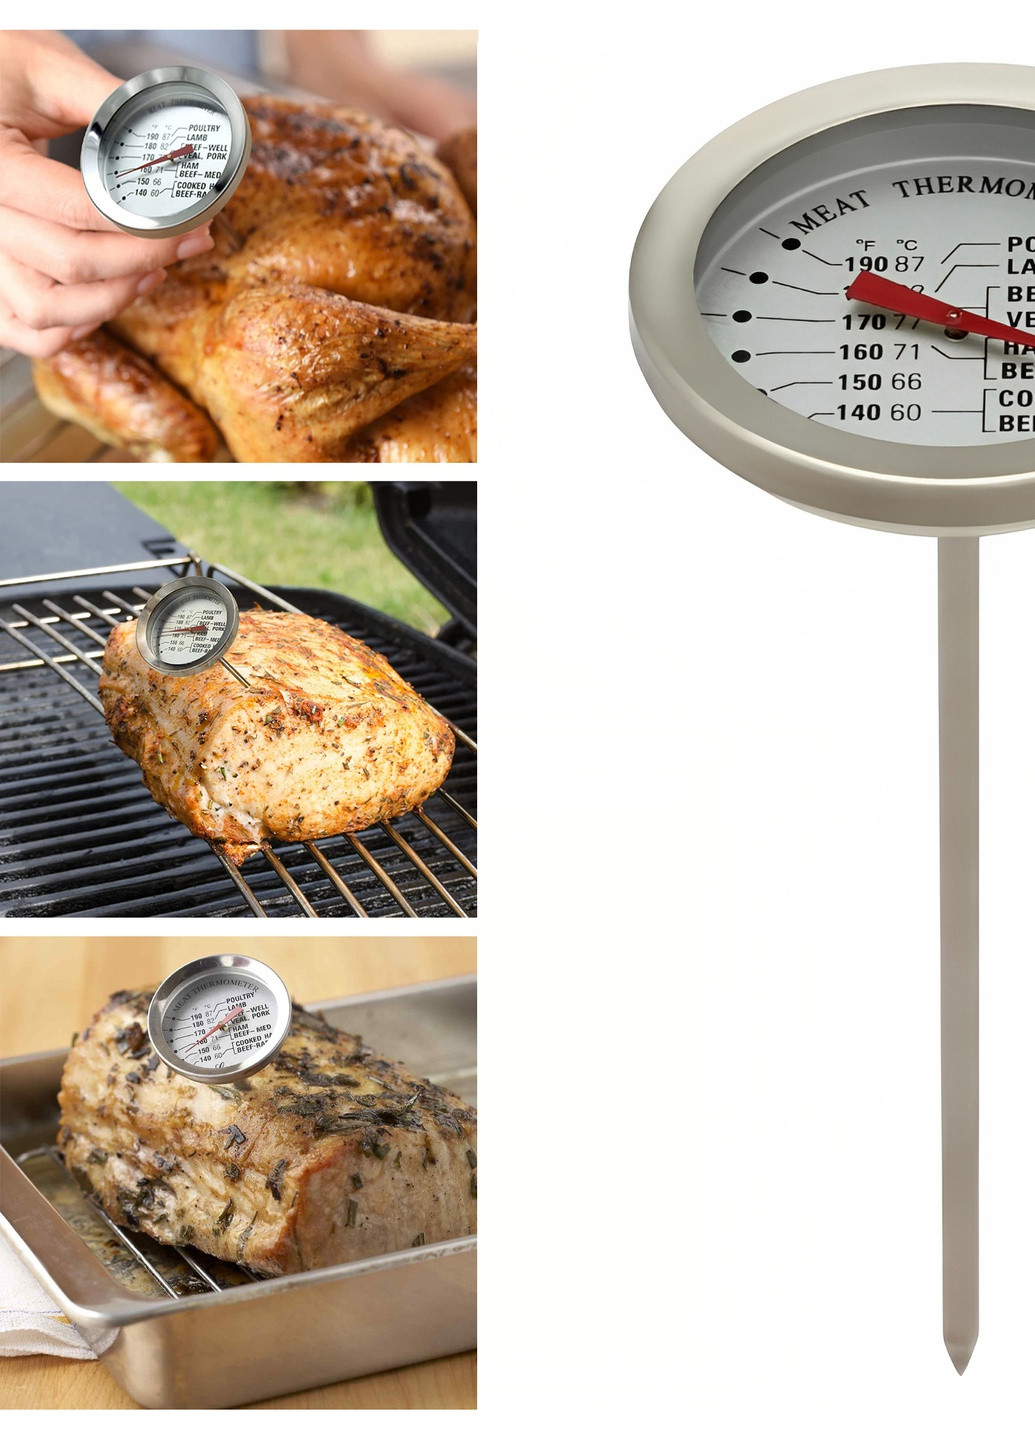 Пищевой термометр градусник для мяса со щупом + 63 ... + 88 ºC A-Plus (259503493)